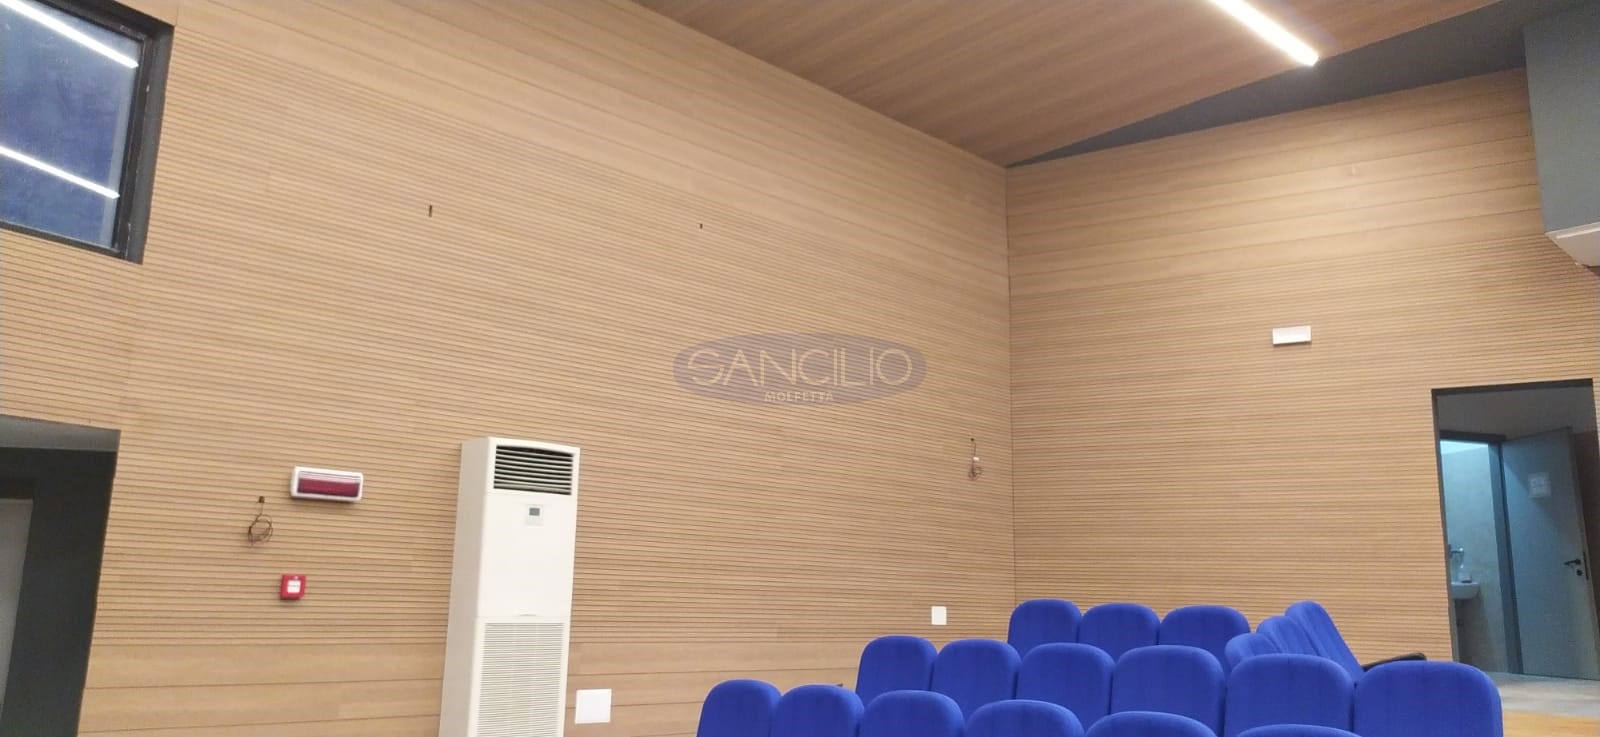 sancilio evotech molfetta - allestimento teatro cinema auditorium arredo rumore acustica fonoassorbenza progettazione sedute accettura